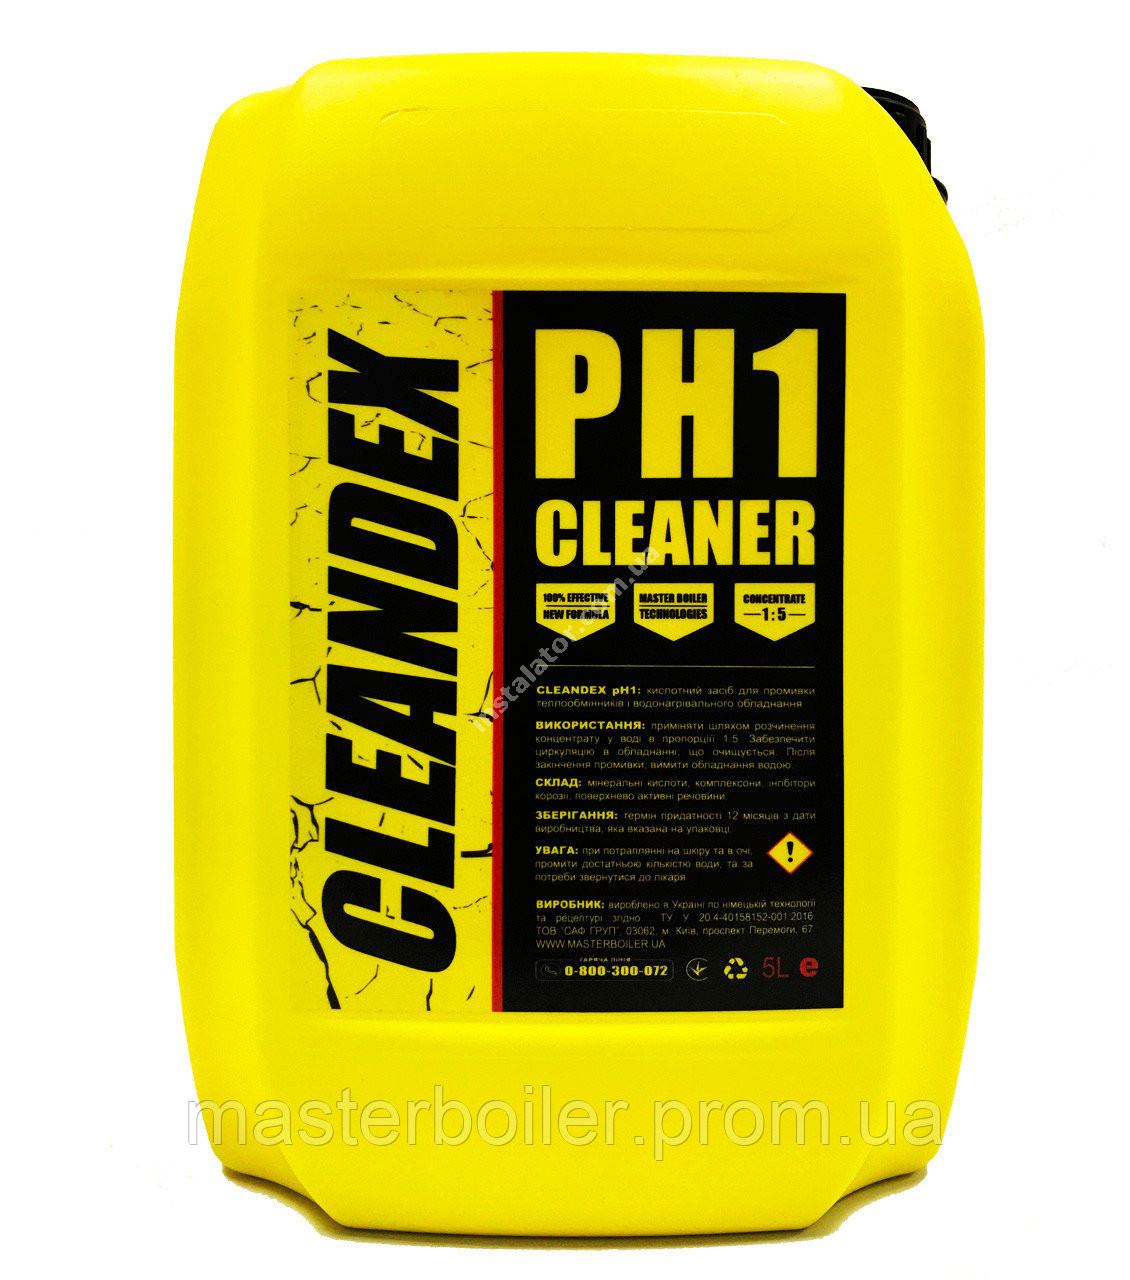 Кислотний засіб для промивки теплообмінників CLEANDEX pH1, 5 л full-image-0